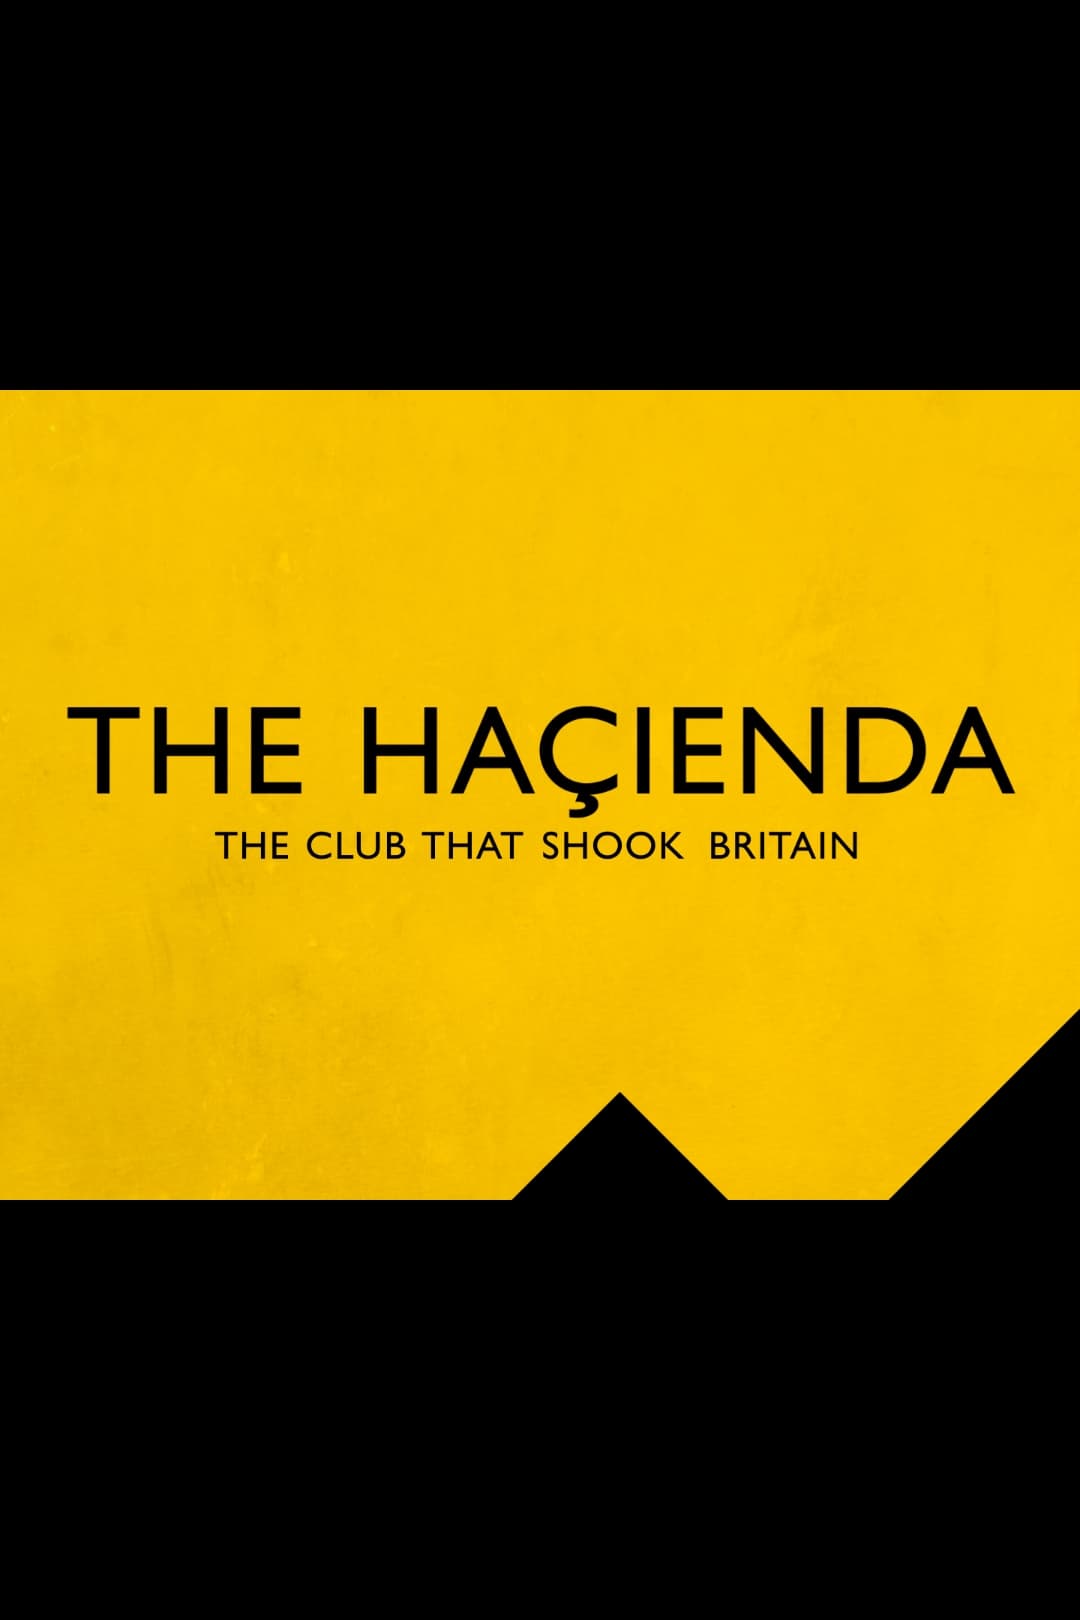 The Hacienda - The Club That Shook Britain